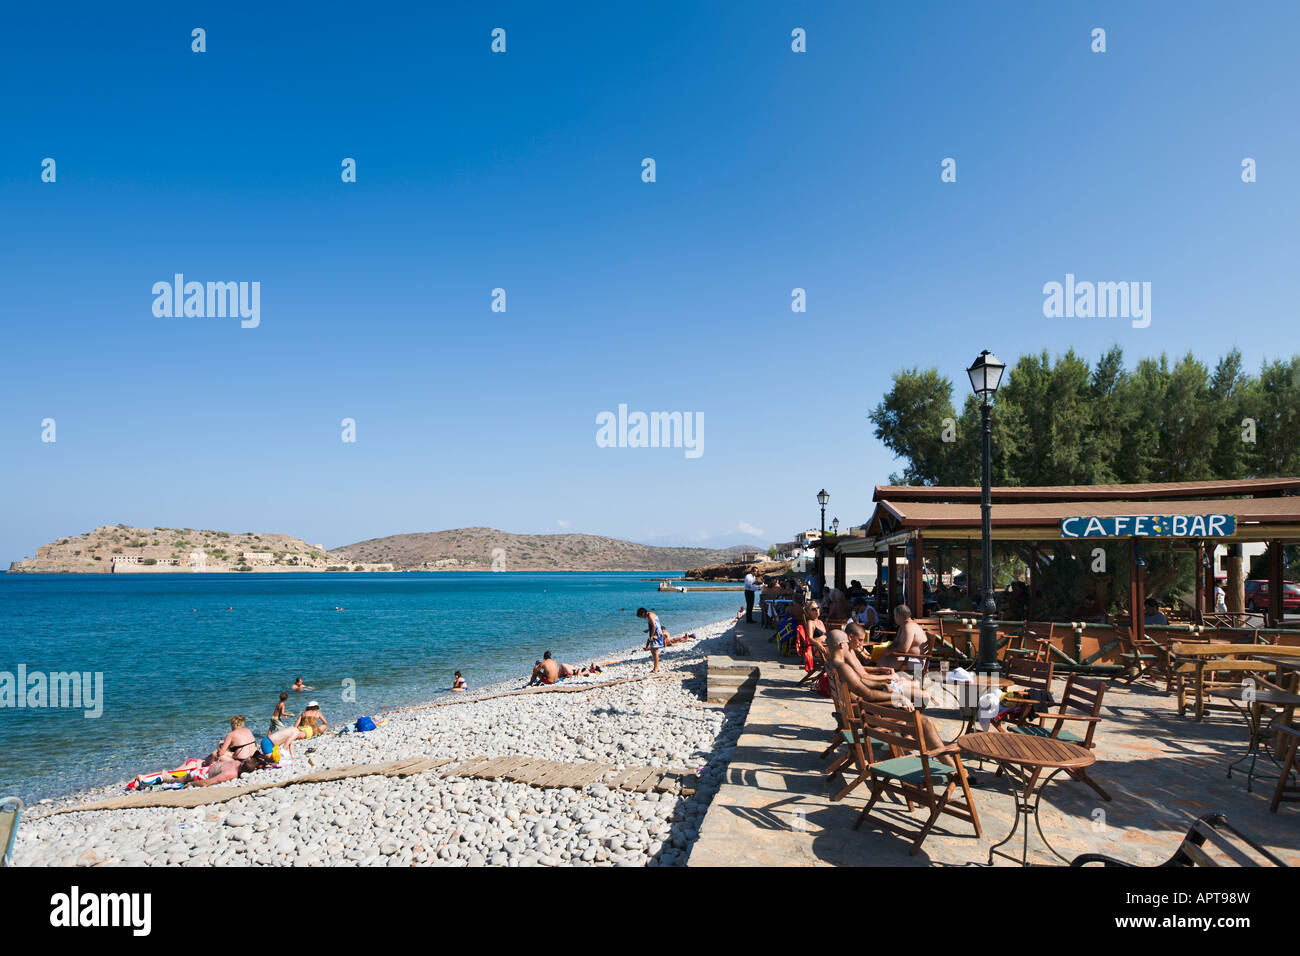 Am Strand Cafébar, Plaka, in der Nähe von Provinz Lasithi, Elounda, Kreta, Griechenland, Nordküste Stockfoto